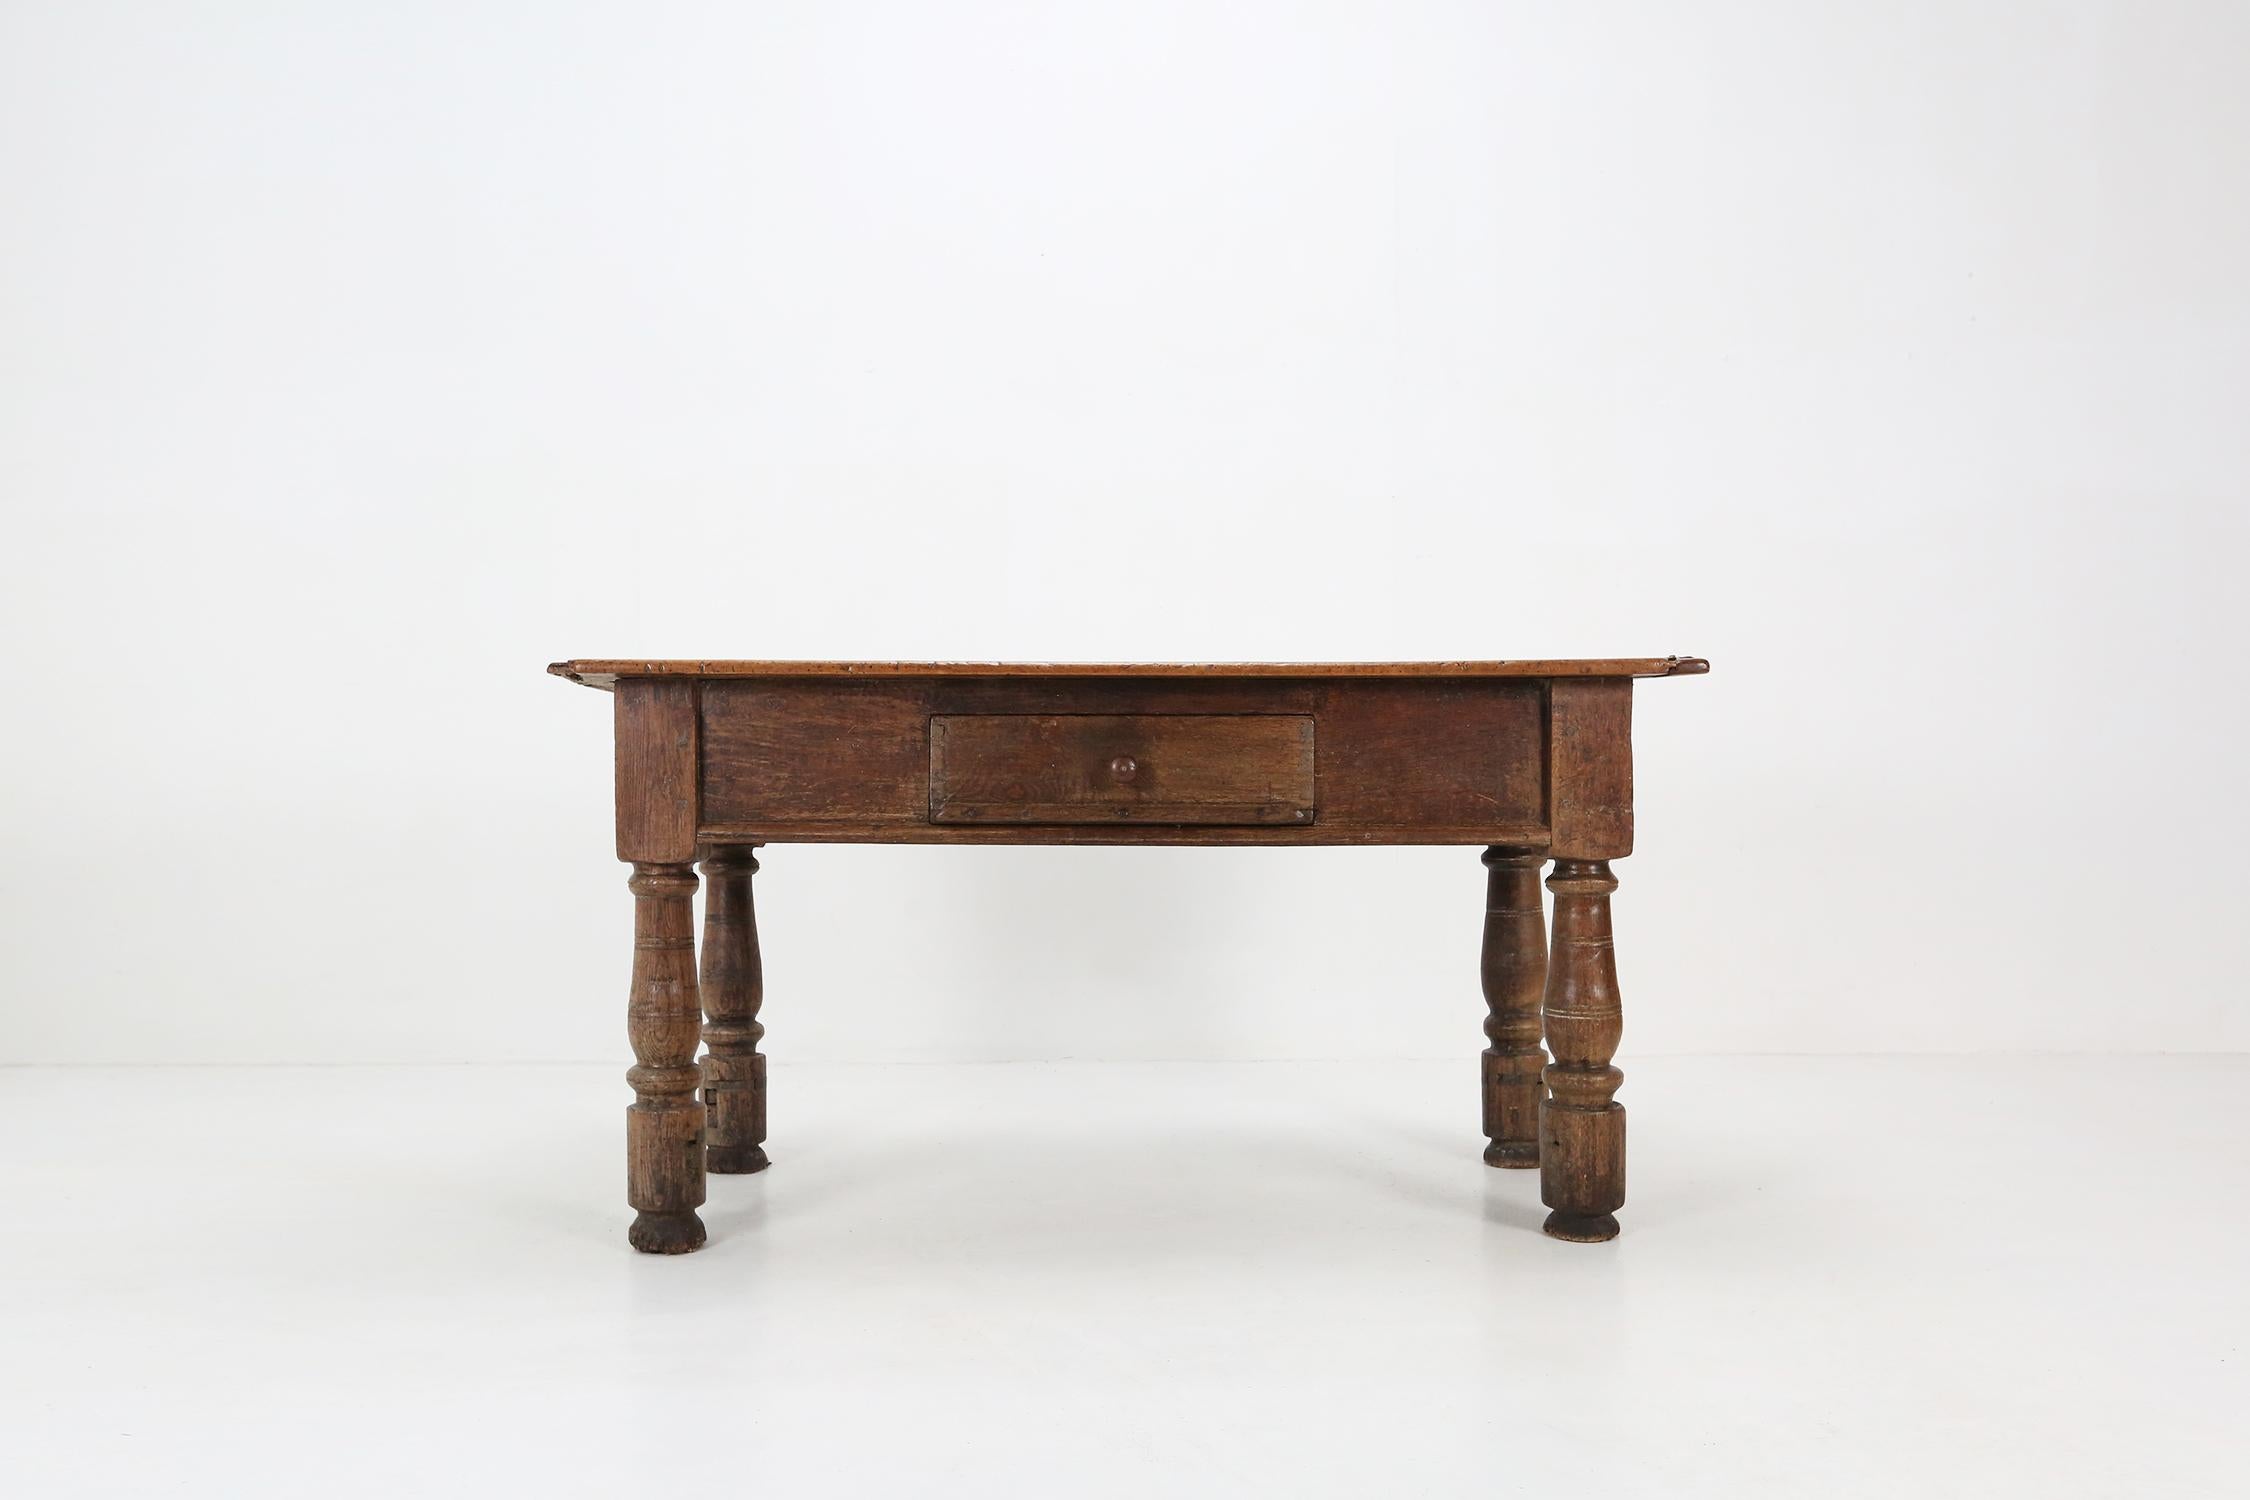 Außergewöhnlicher und ungewöhnlicher belgischer Barocktisch aus dem 18. Jahrhundert in der Originalfarbe mit einer Schublade auf der Vorderseite. Belgien, um 1740.
Dieser Tisch kann als Beistelltisch, Konsolentisch verwendet werden.
Die antike